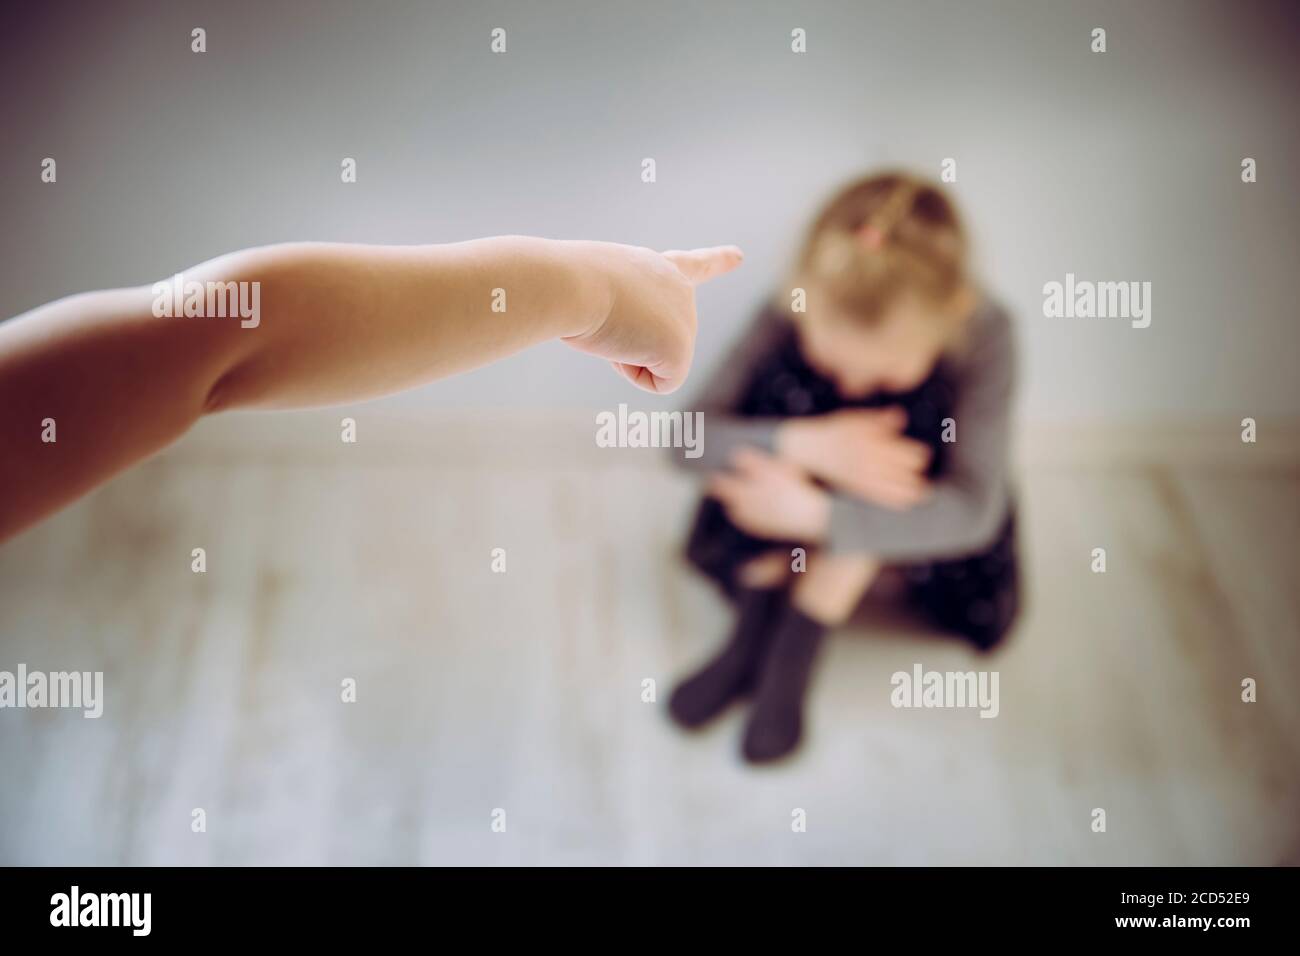 L'enfant qui pointe le doigt sur une victime floue et méconnue, est assis sur le sol et pleure. Le concept d'intimidation. Banque D'Images